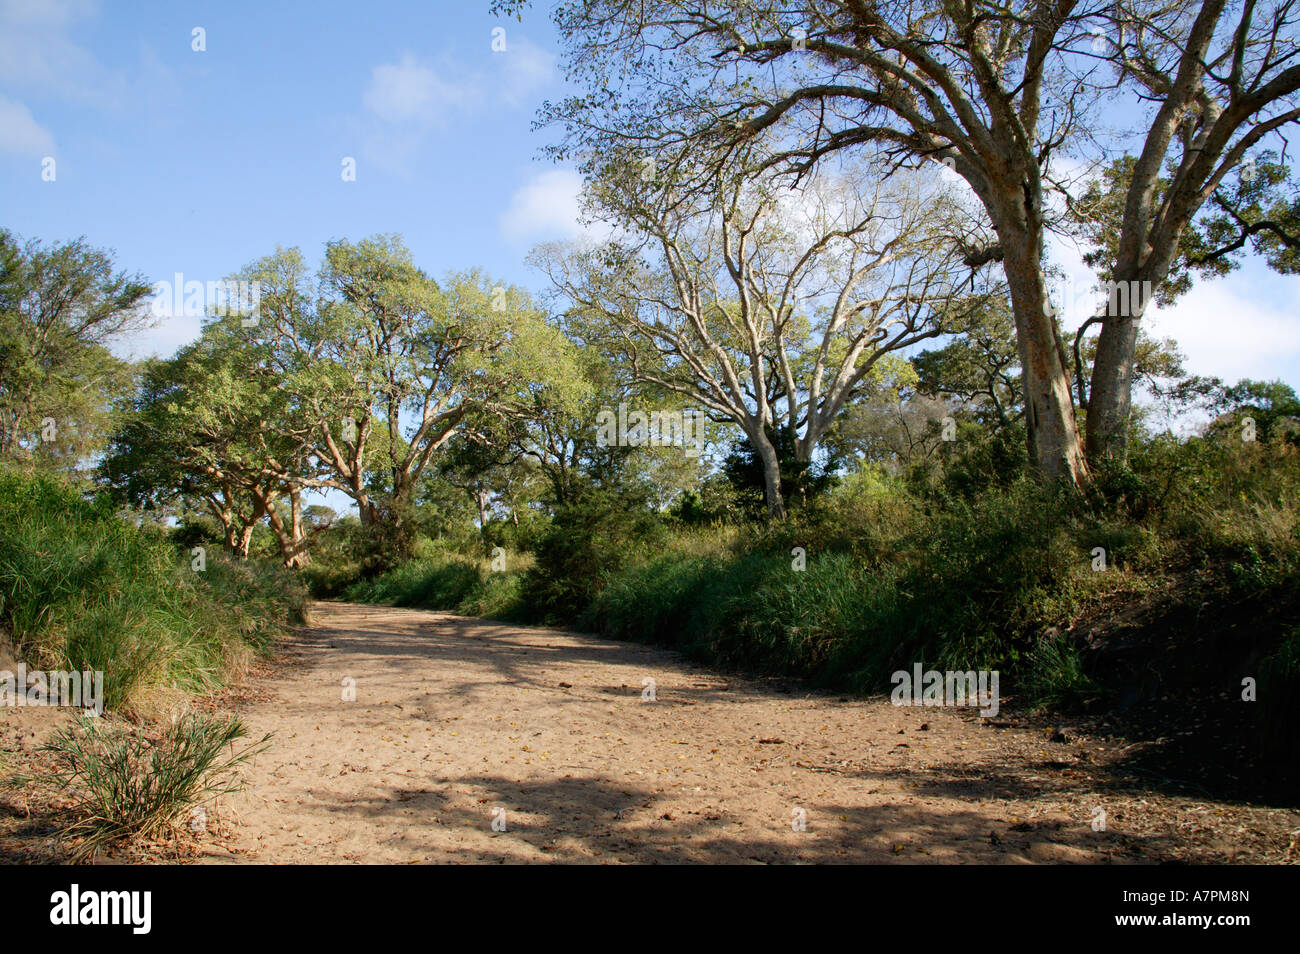 Un lit de rivière à sec bordé de figuiers Ficus sycamorus et végétation luxuriante dans la région centrale du Parc National Kruger Banque D'Images